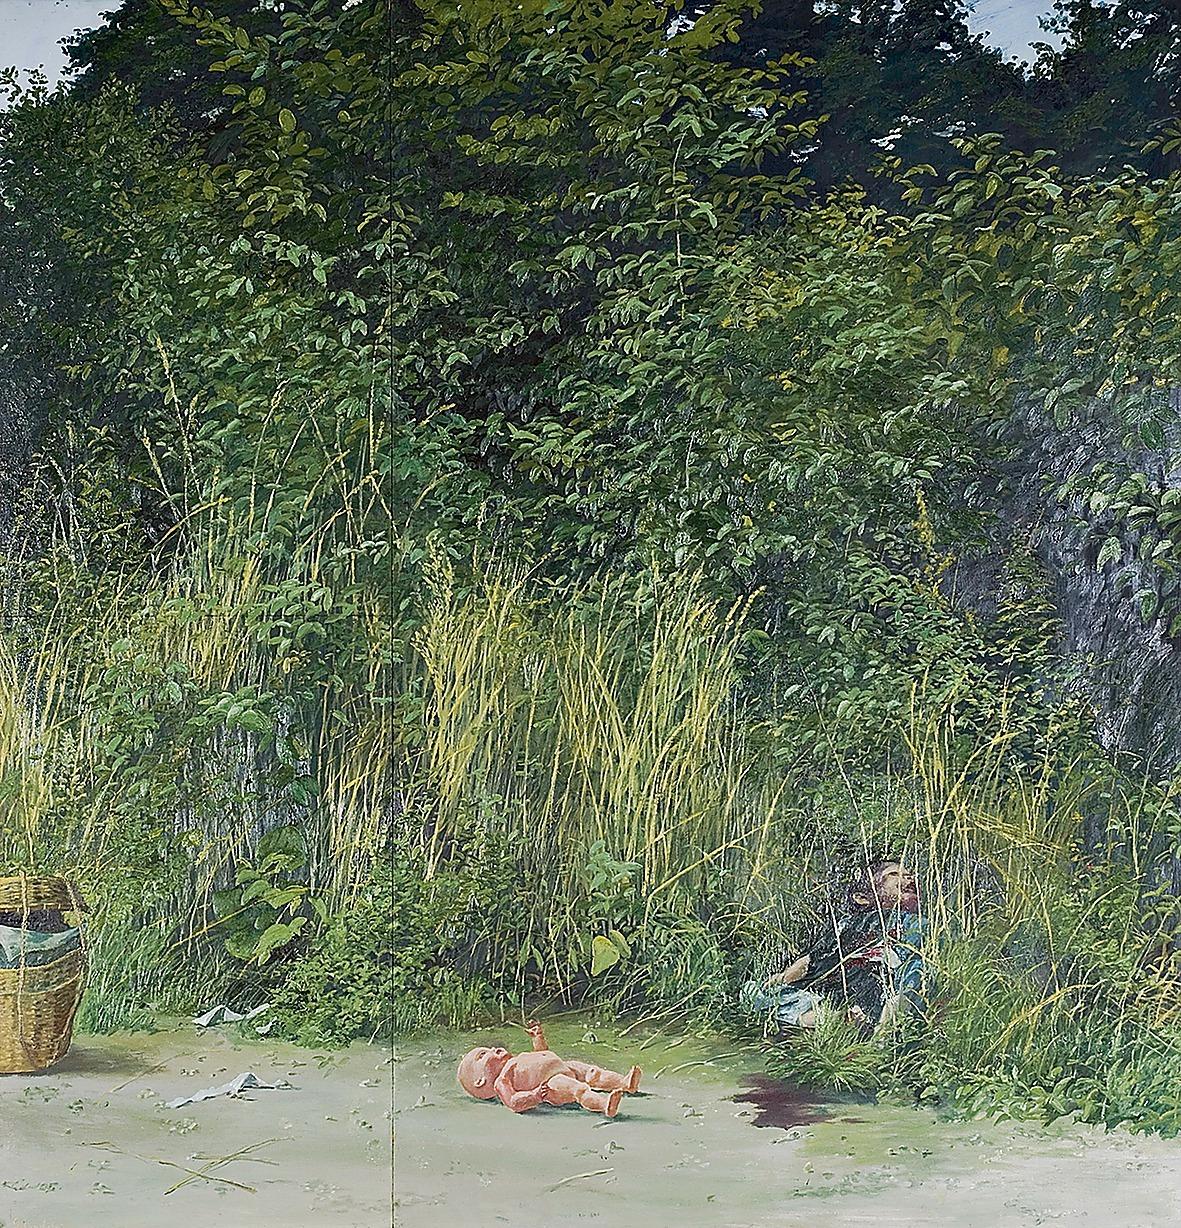 Gerhard Nordström, ”Dockan”, 1972, ur sviten Sommaren 1970, olja på masonit. En av målningarna på Malmö konsthall som får en smärtsam aktualitet efter massmorden på Utöya i somras.© Borås Konstmuseum